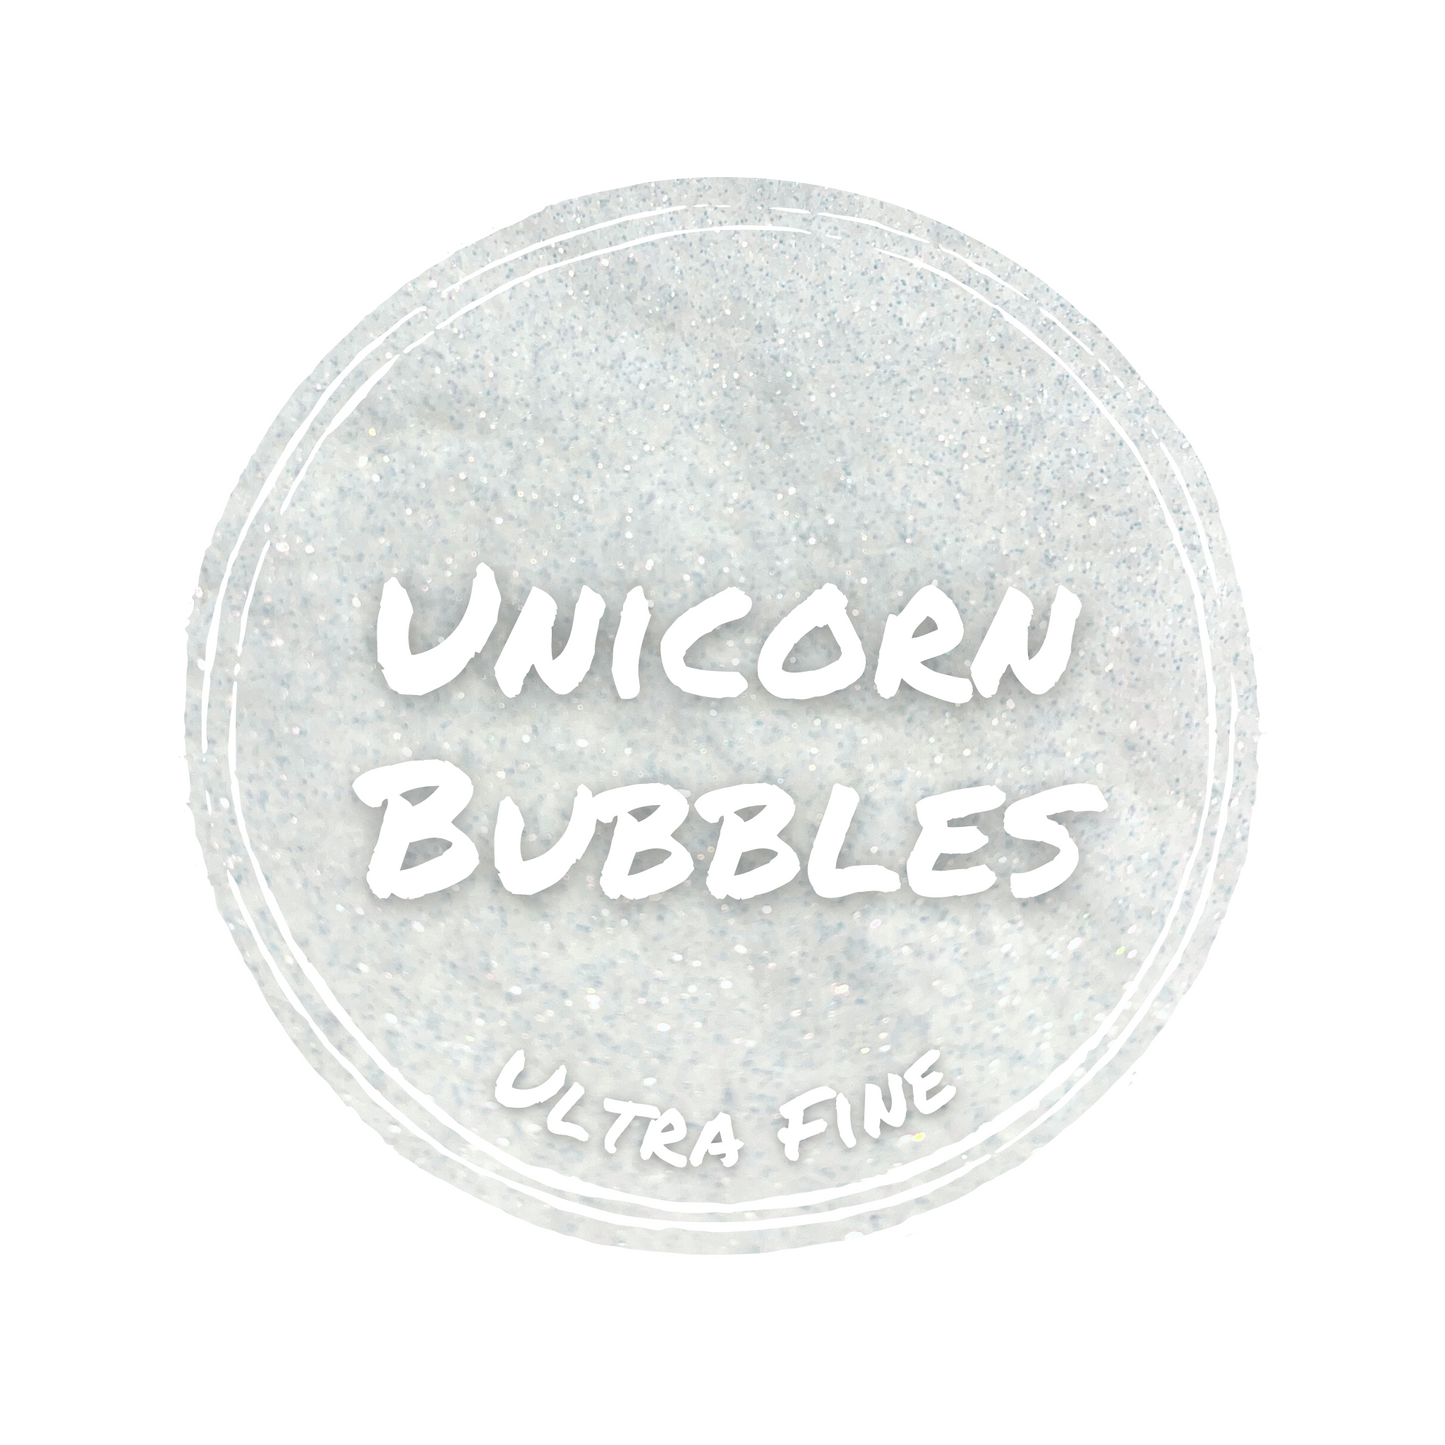 Unicorn Bubbles - Ultra Fine